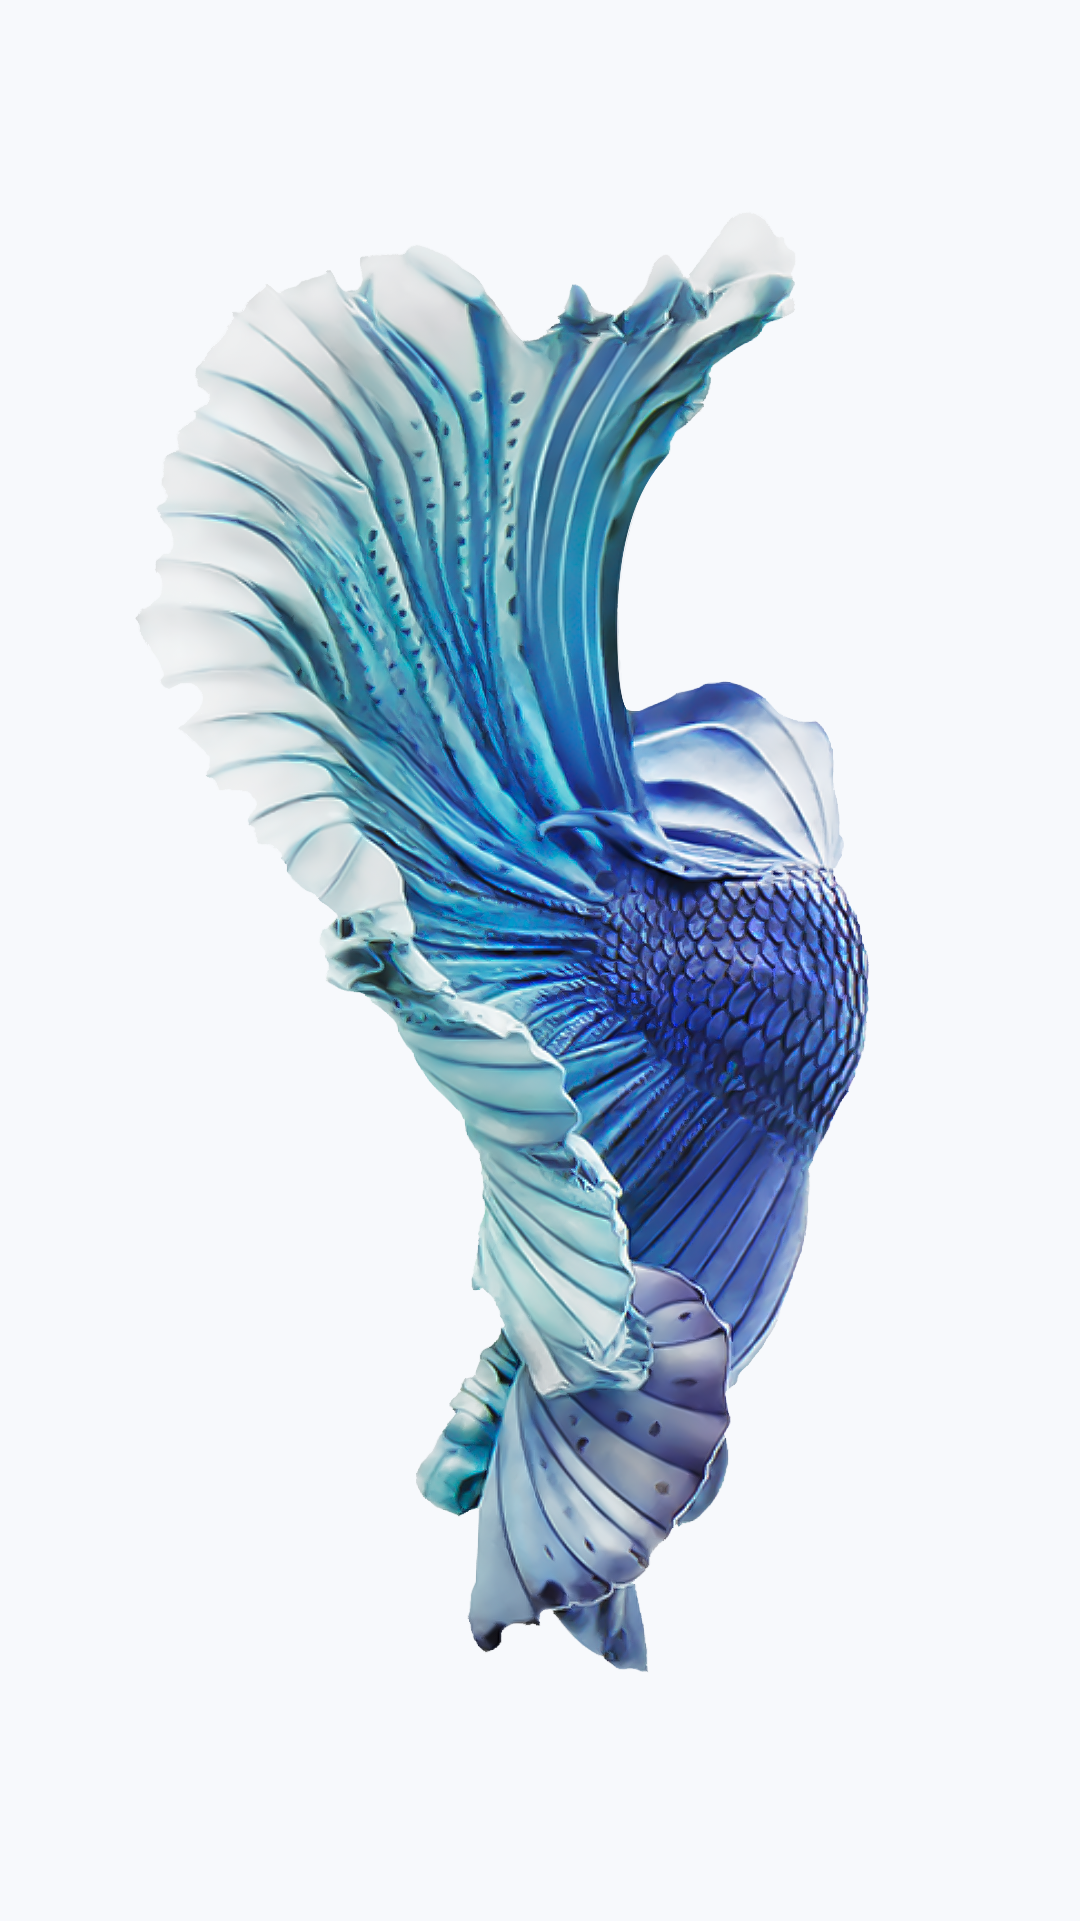 Iphone Fish Wallpapers Free Download Pixelstalk Net